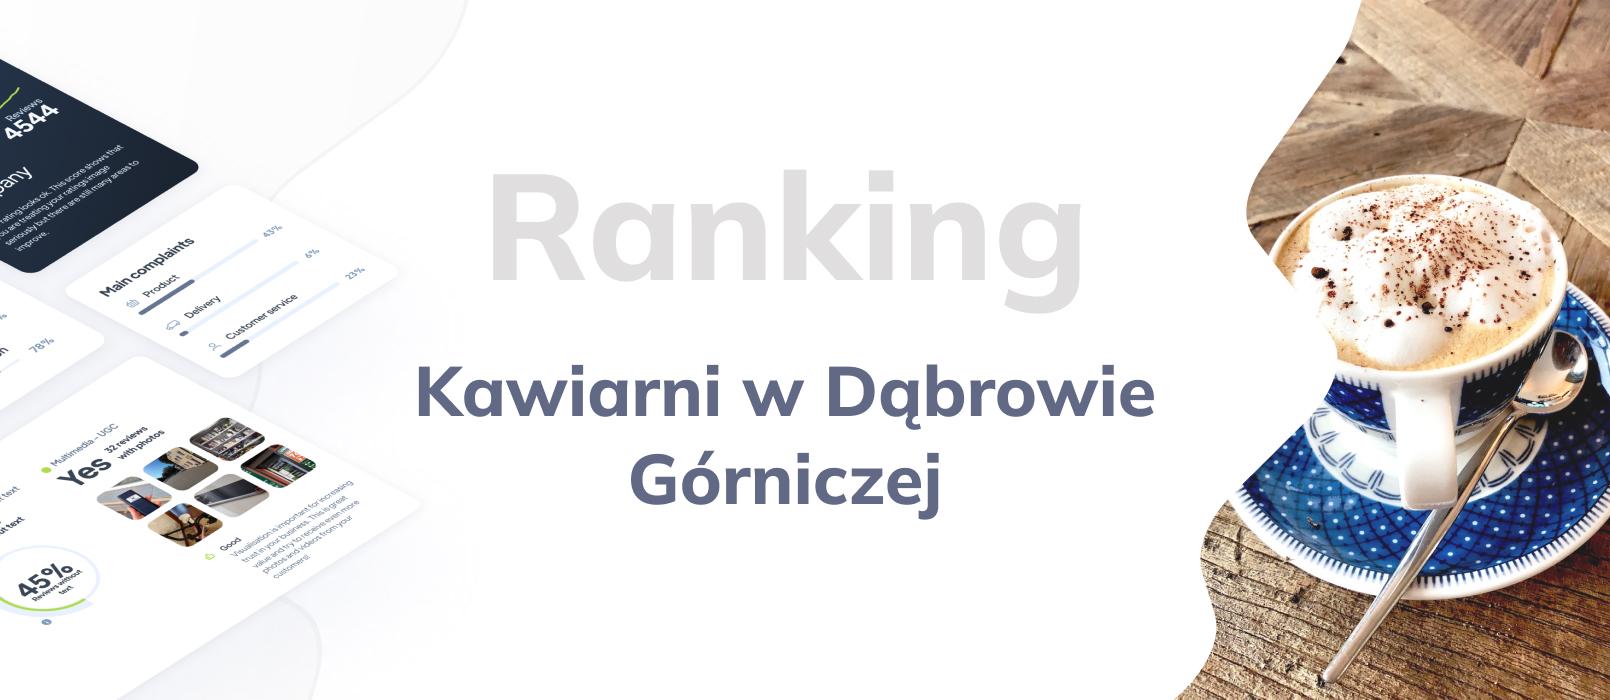 Kawiarnie w Dąbrowie Górniczej - ranking TOP 10